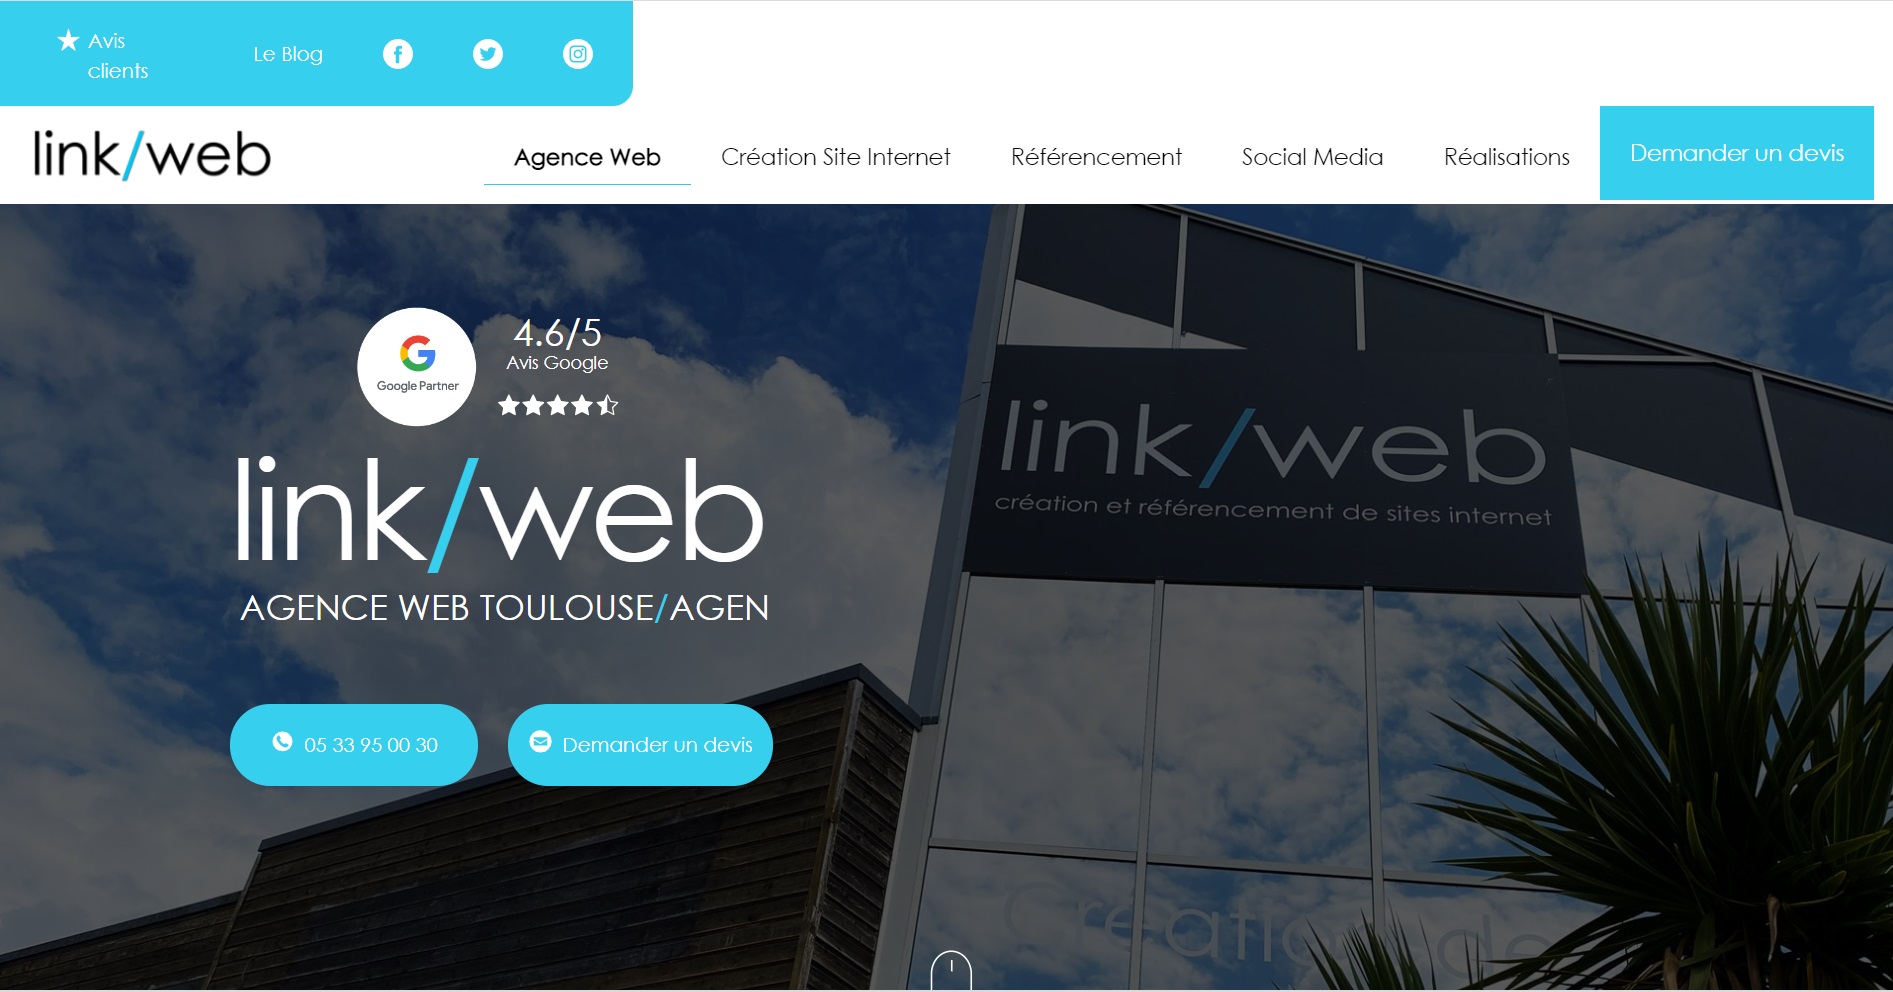  Link/Web - Agence Web à Toulouse